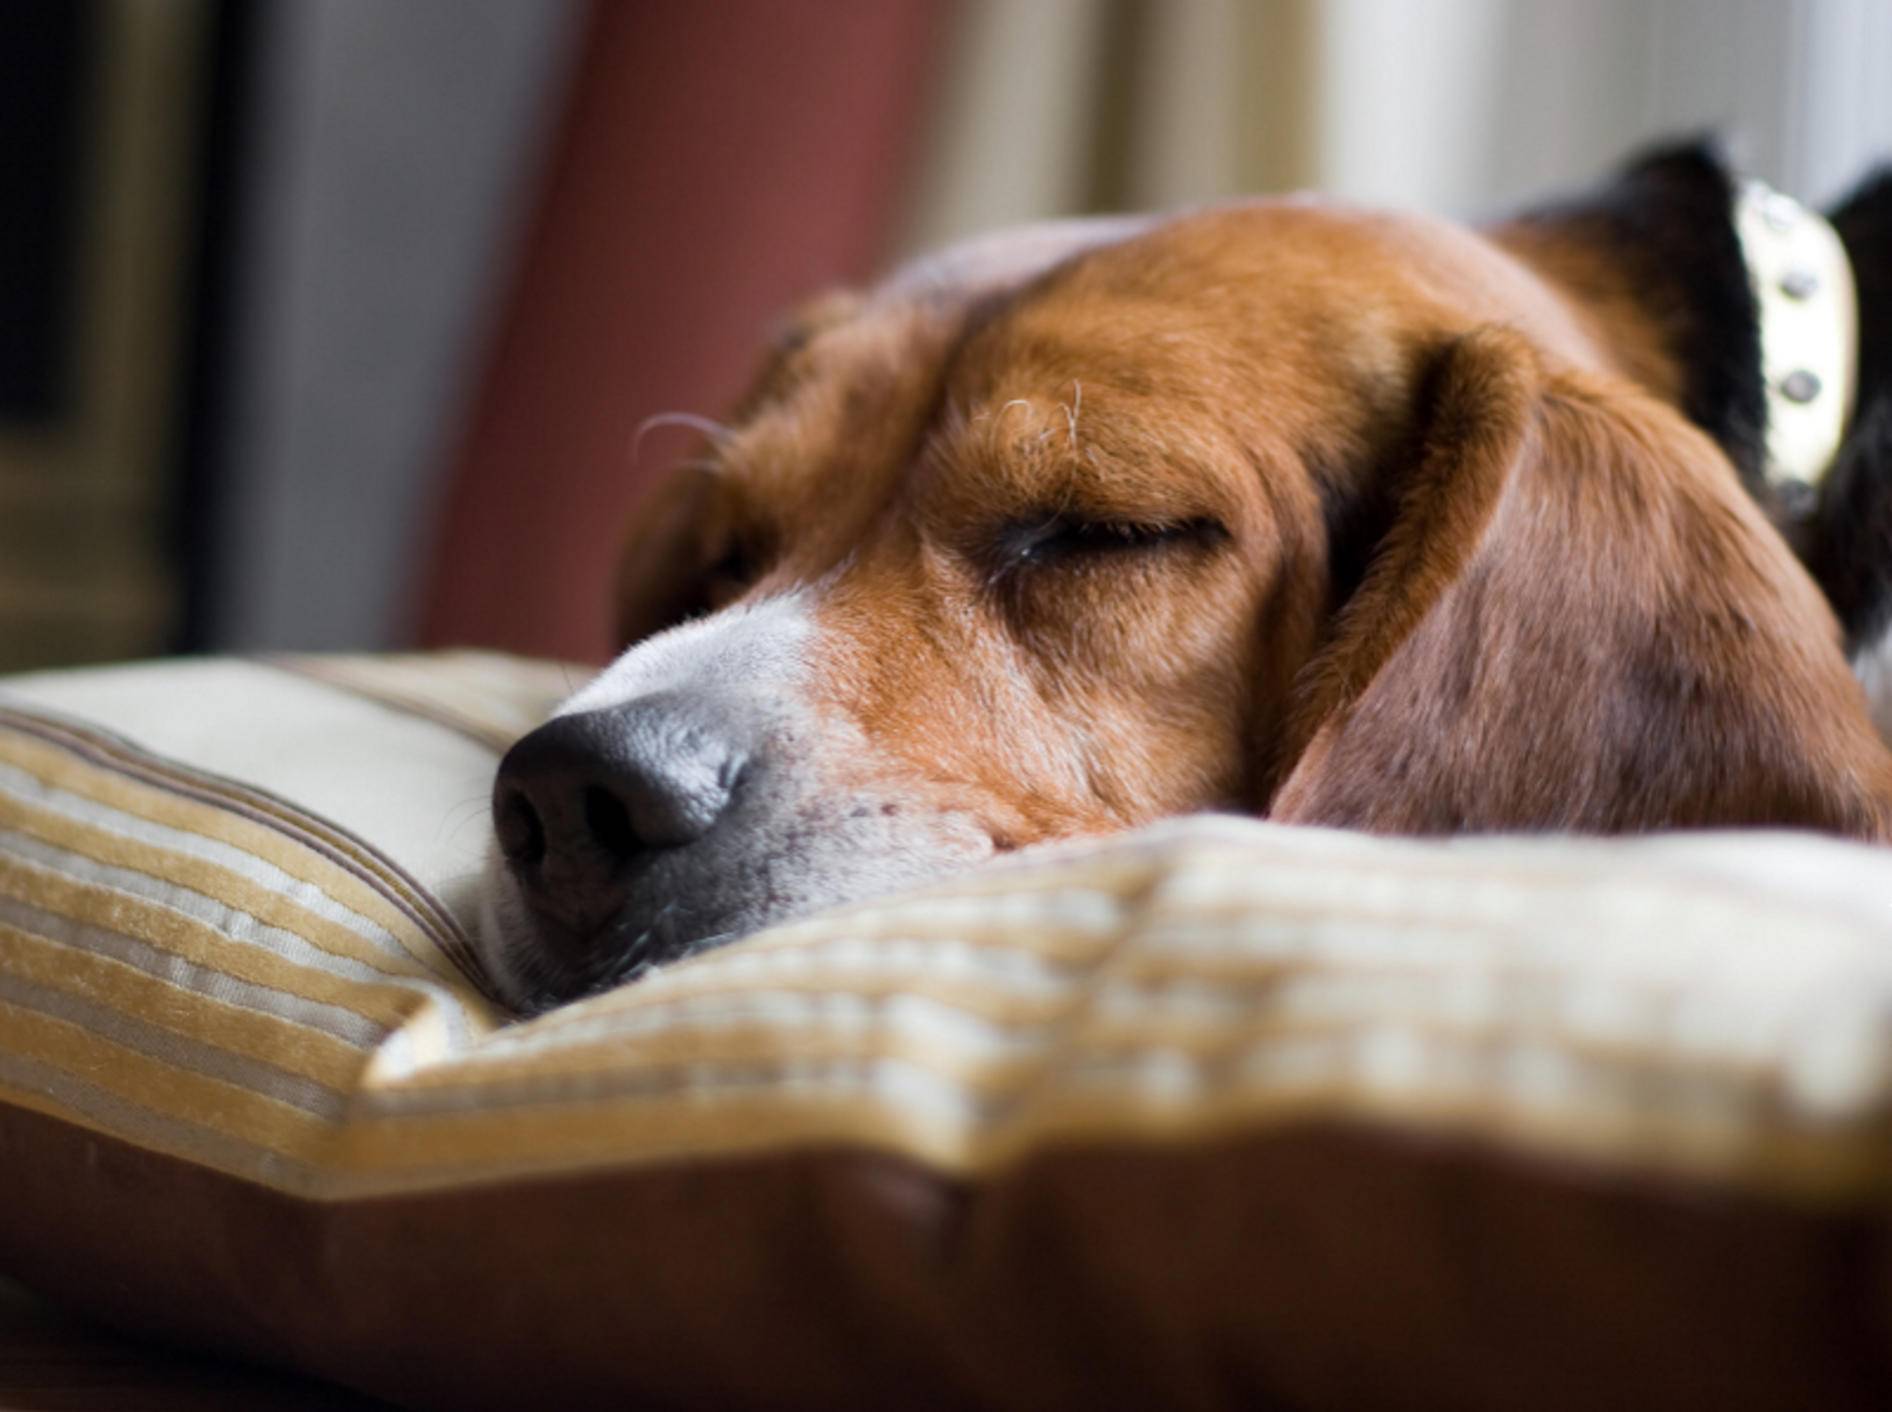 Schlaf ist für alle Lebewesen lebensnotwendig und sollte daher erholsam sein – Shutterstock / ARENA Creative